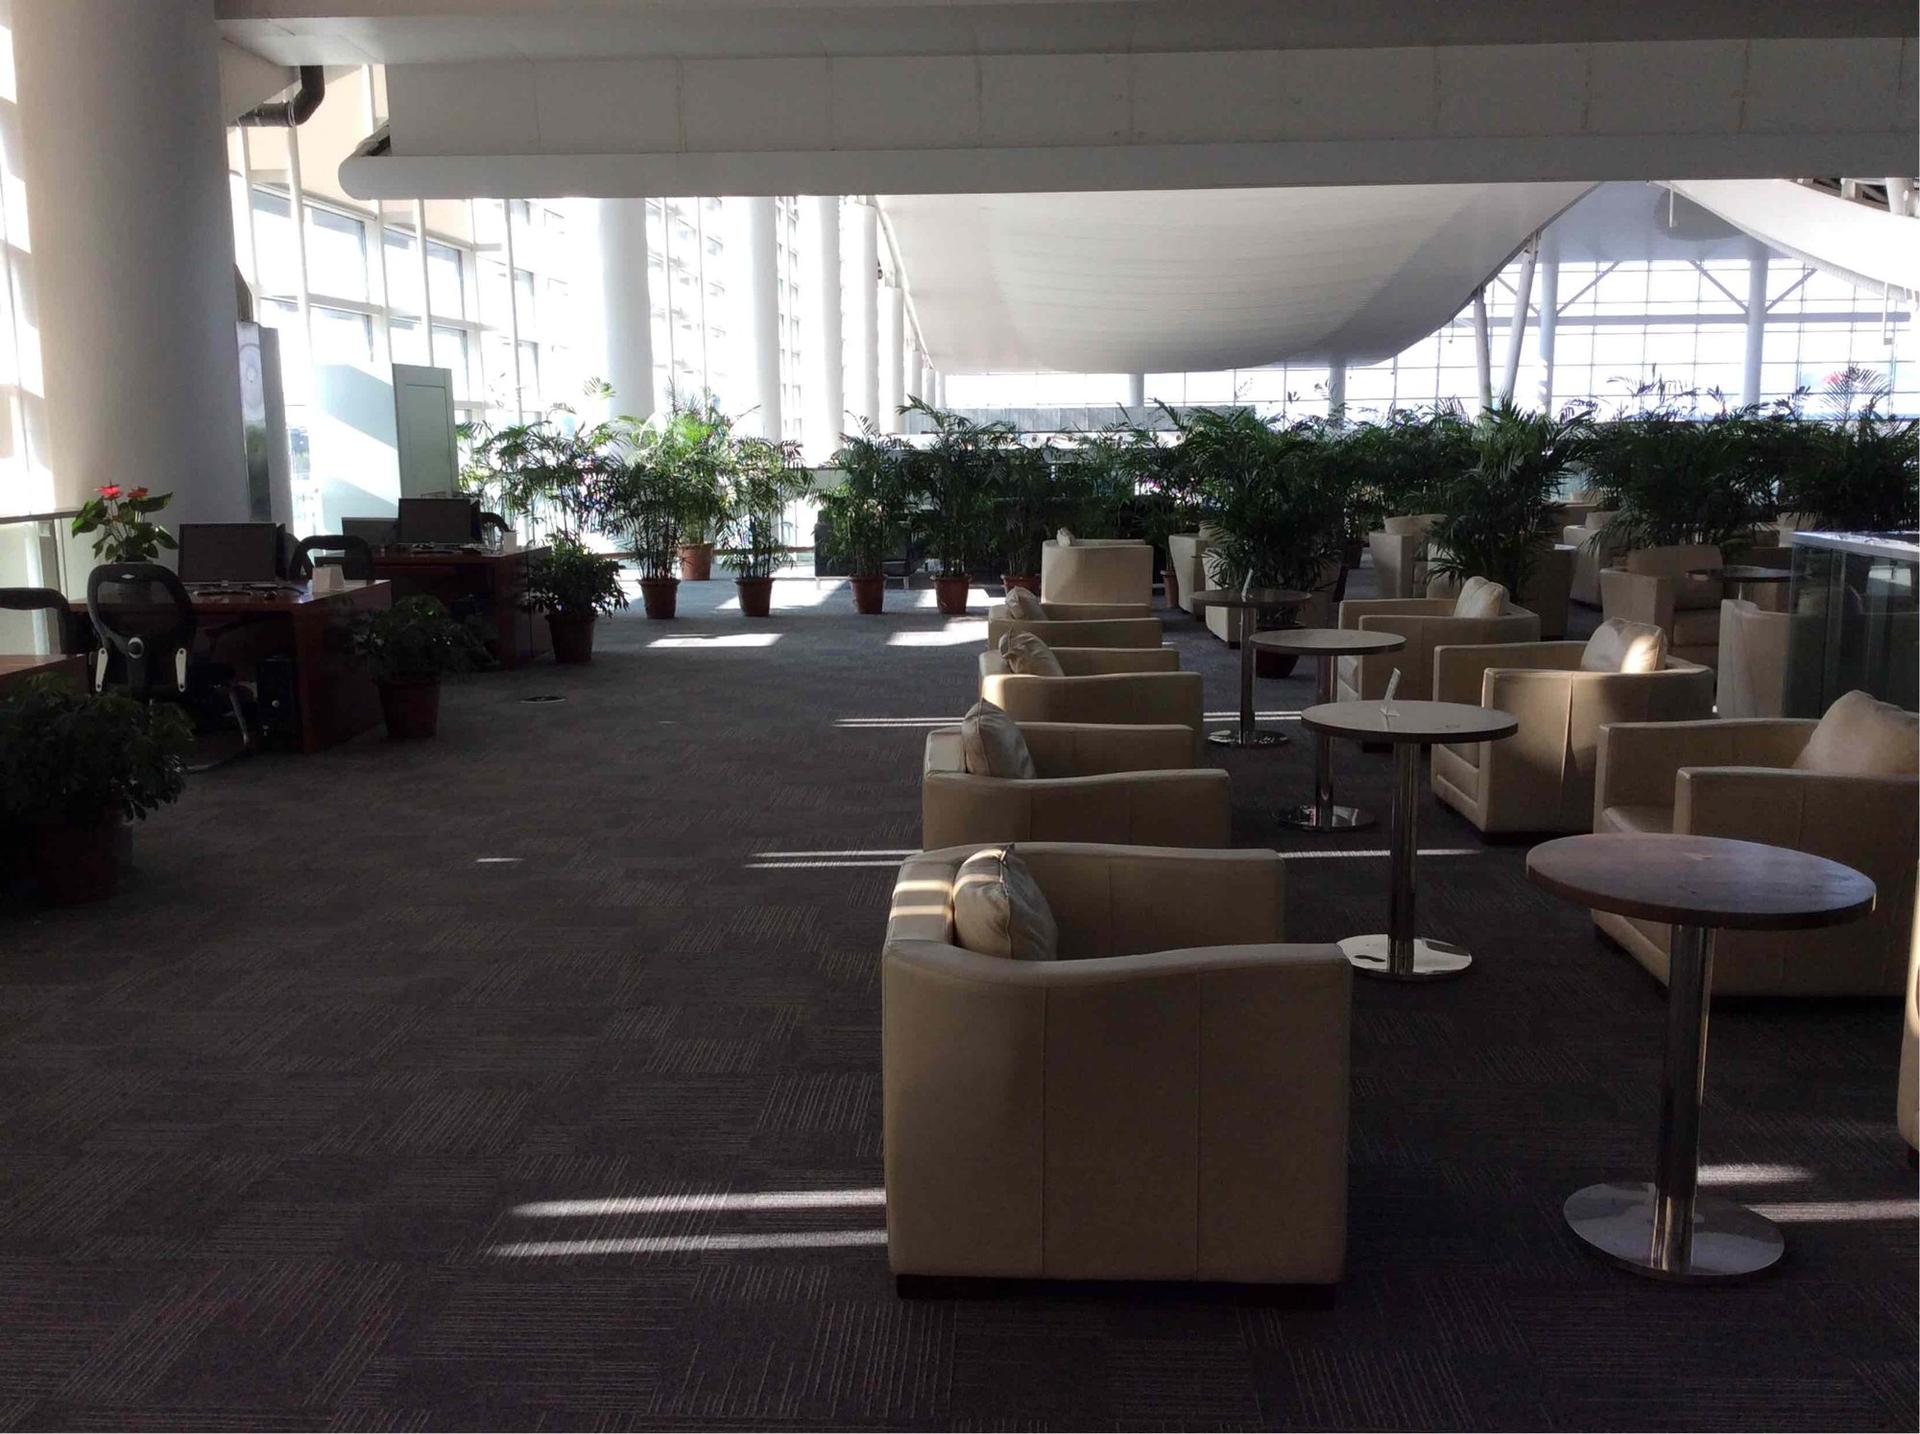 Hangzhou Xiaoshan Airport First Class Lounge image 5 of 8